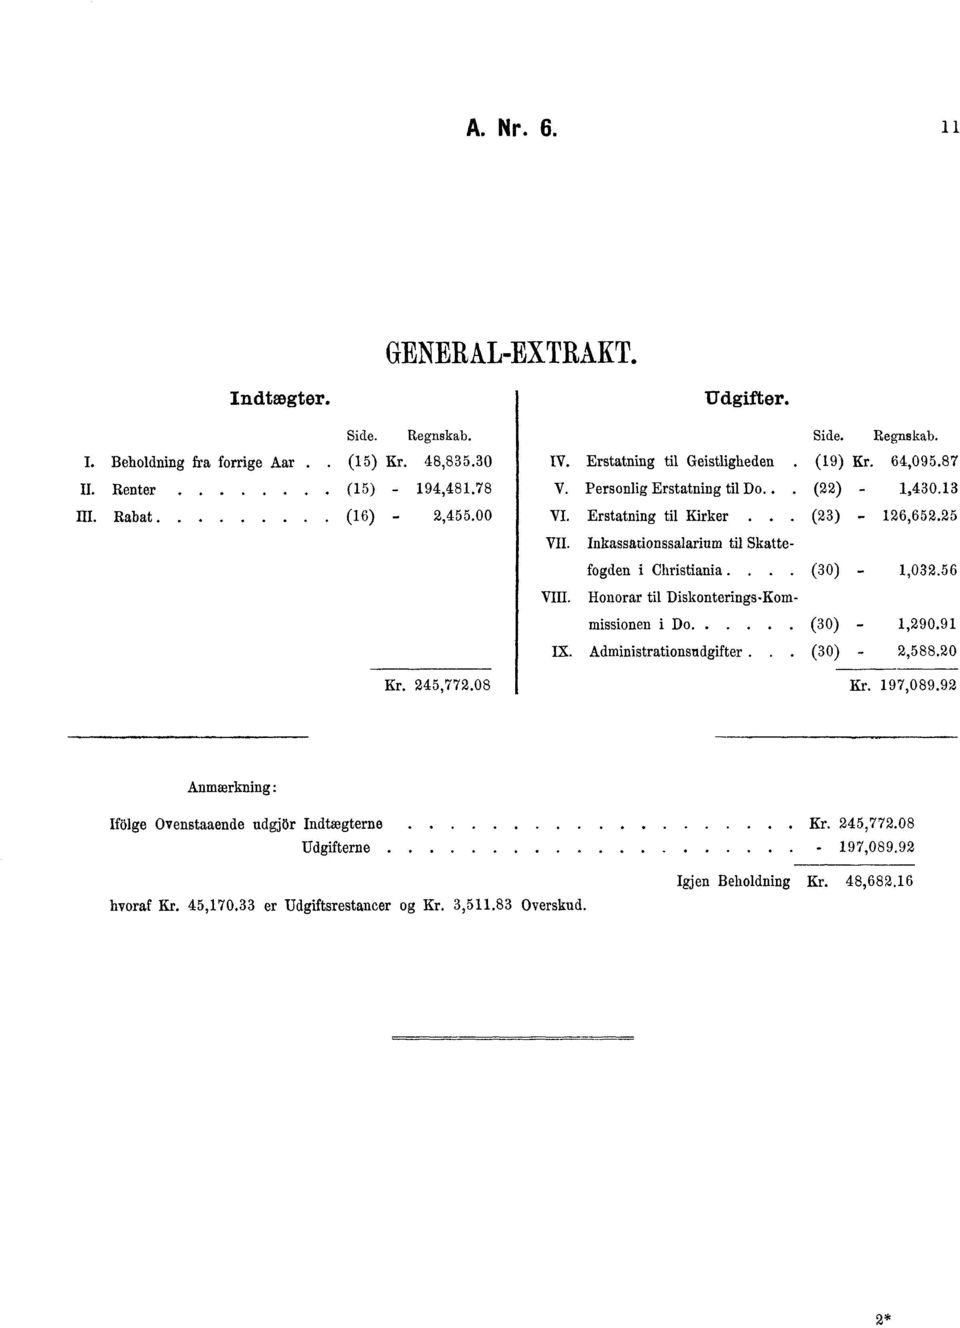 Inkassationssalarium til Skattefogden i Christiania... (0) -,02.6 VIII. Honorar til Diskonterings-Kommissionen i Do (0) -,2.9 Ix. Administrationsudgifter.